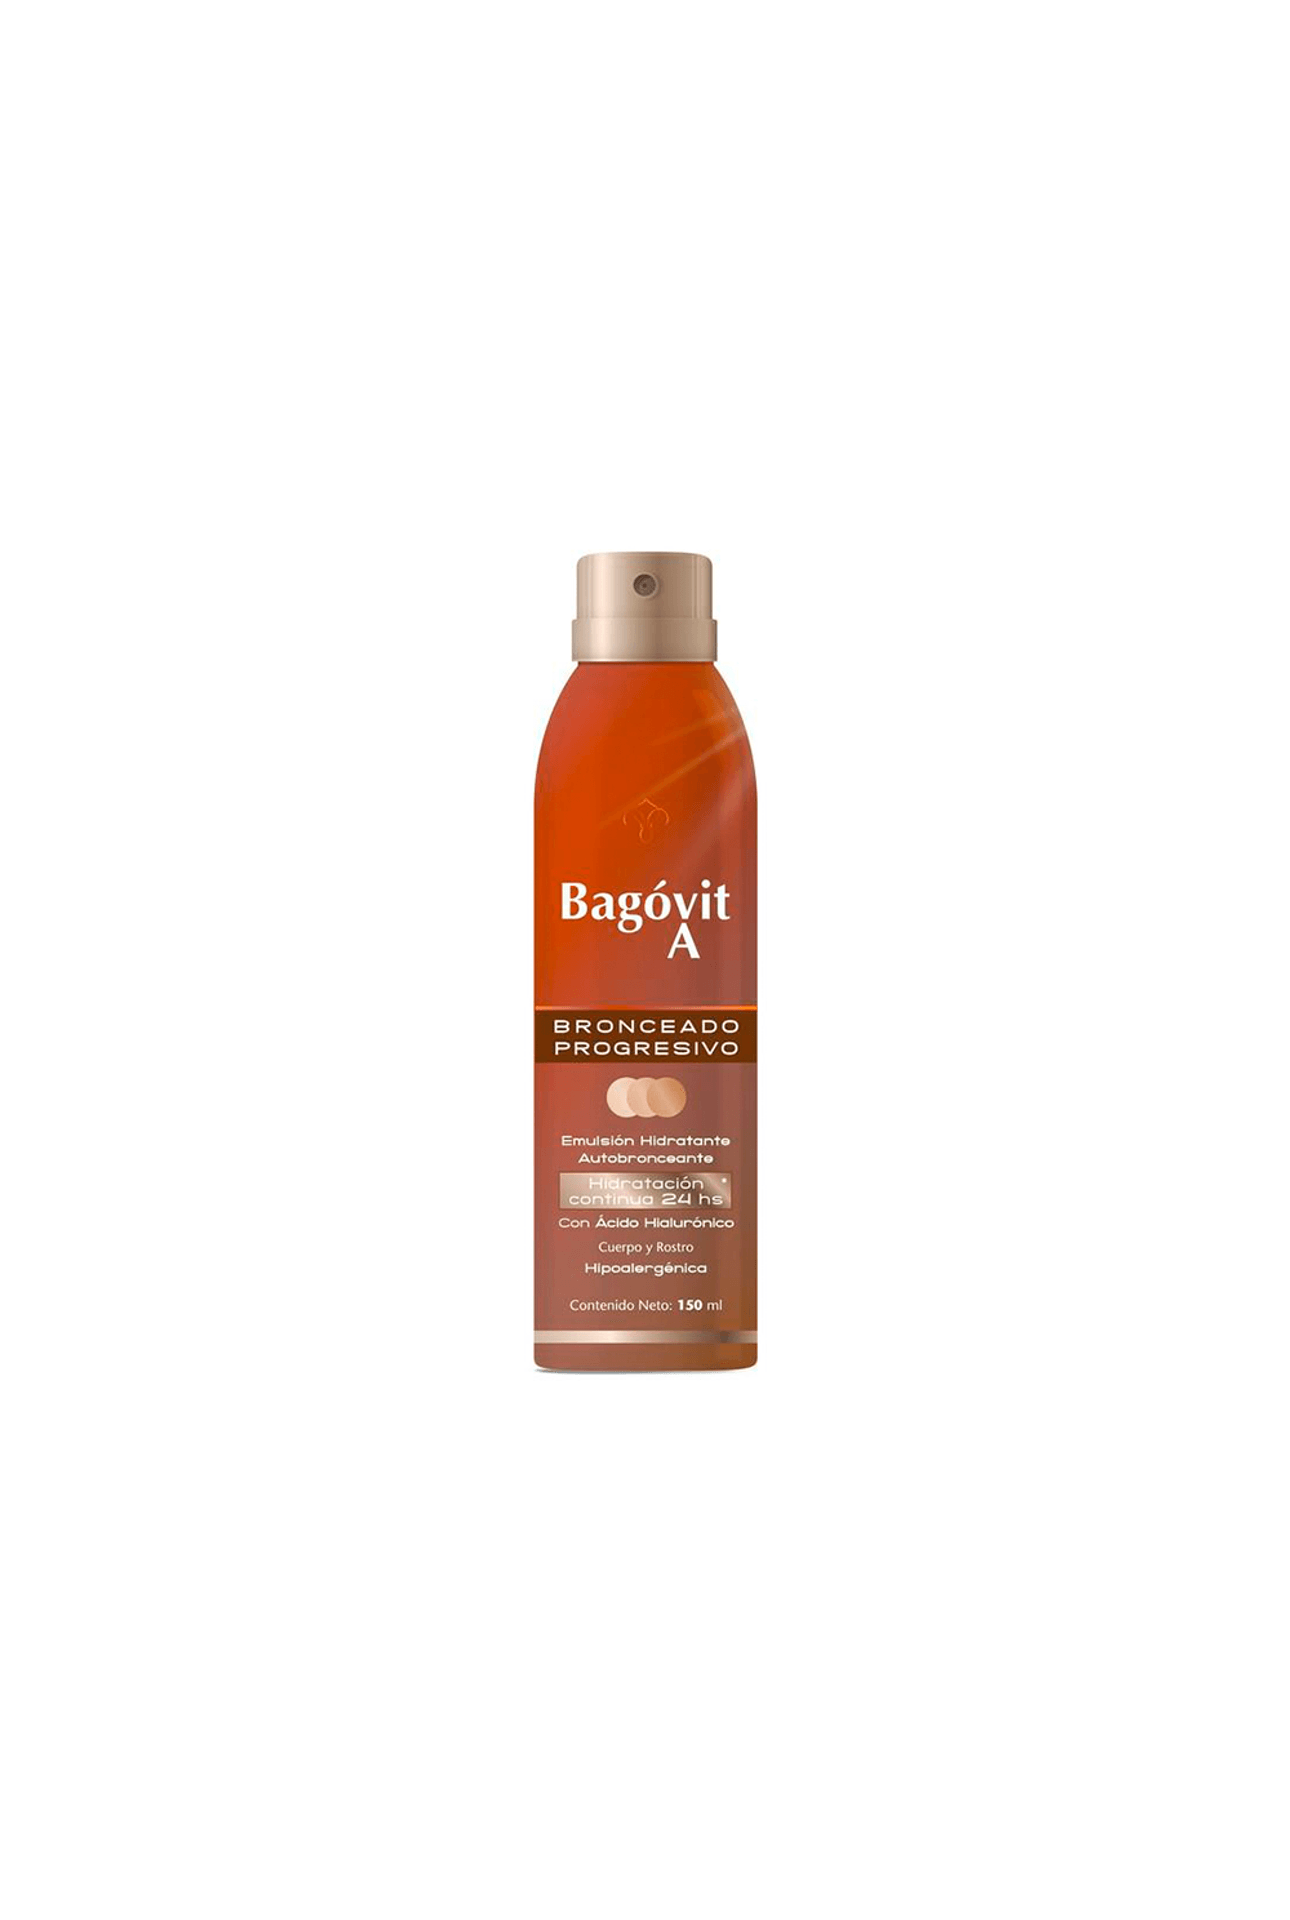 Bagovit-58852_Bagovit-Bronceado-Progresivo-Emulsion-en-Spray-Continuo-x-150-Ml_img1-7790375269302